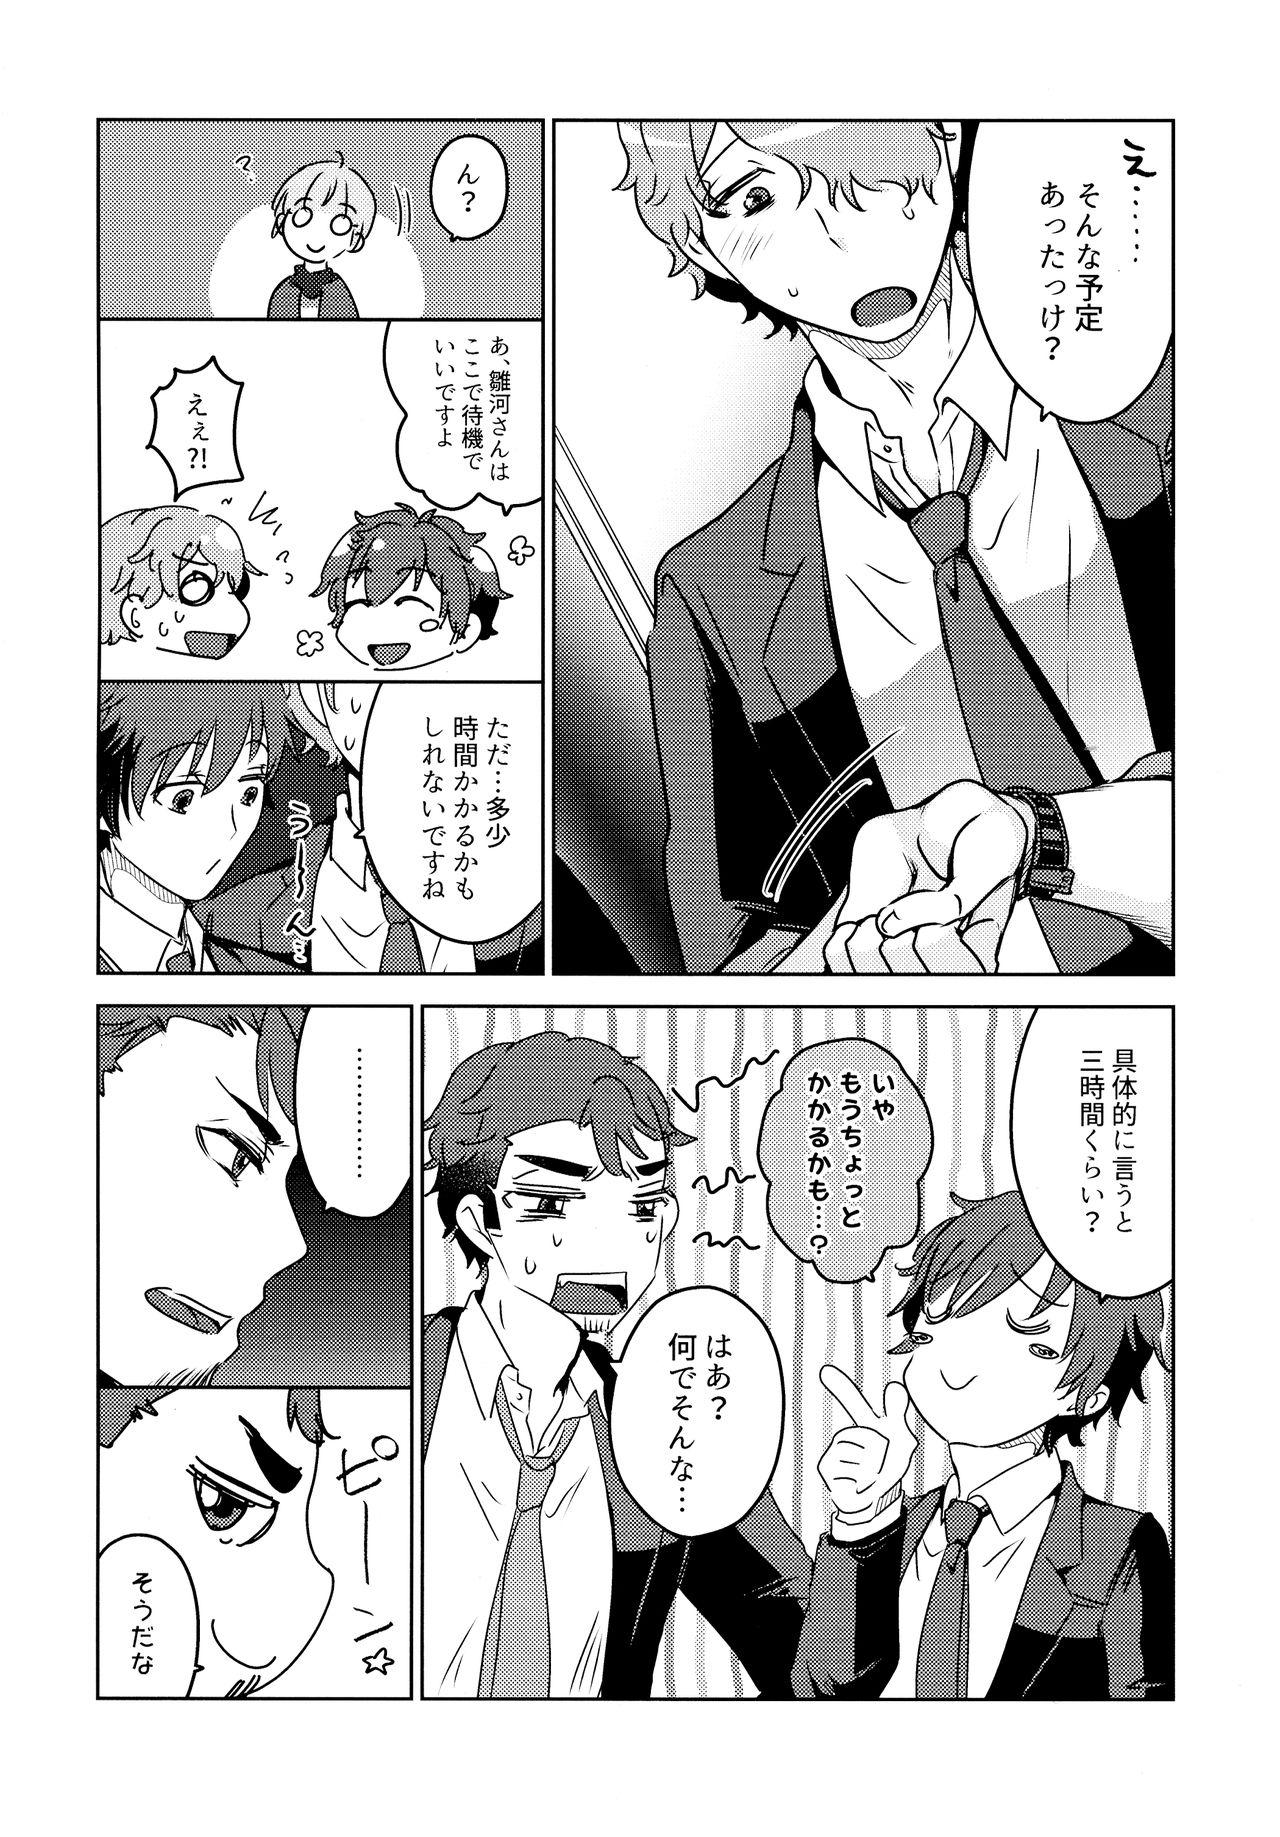 Caught Furete, Yuruyaka ni, Tokeatta - Psycho-pass Free Blowjobs - Page 12